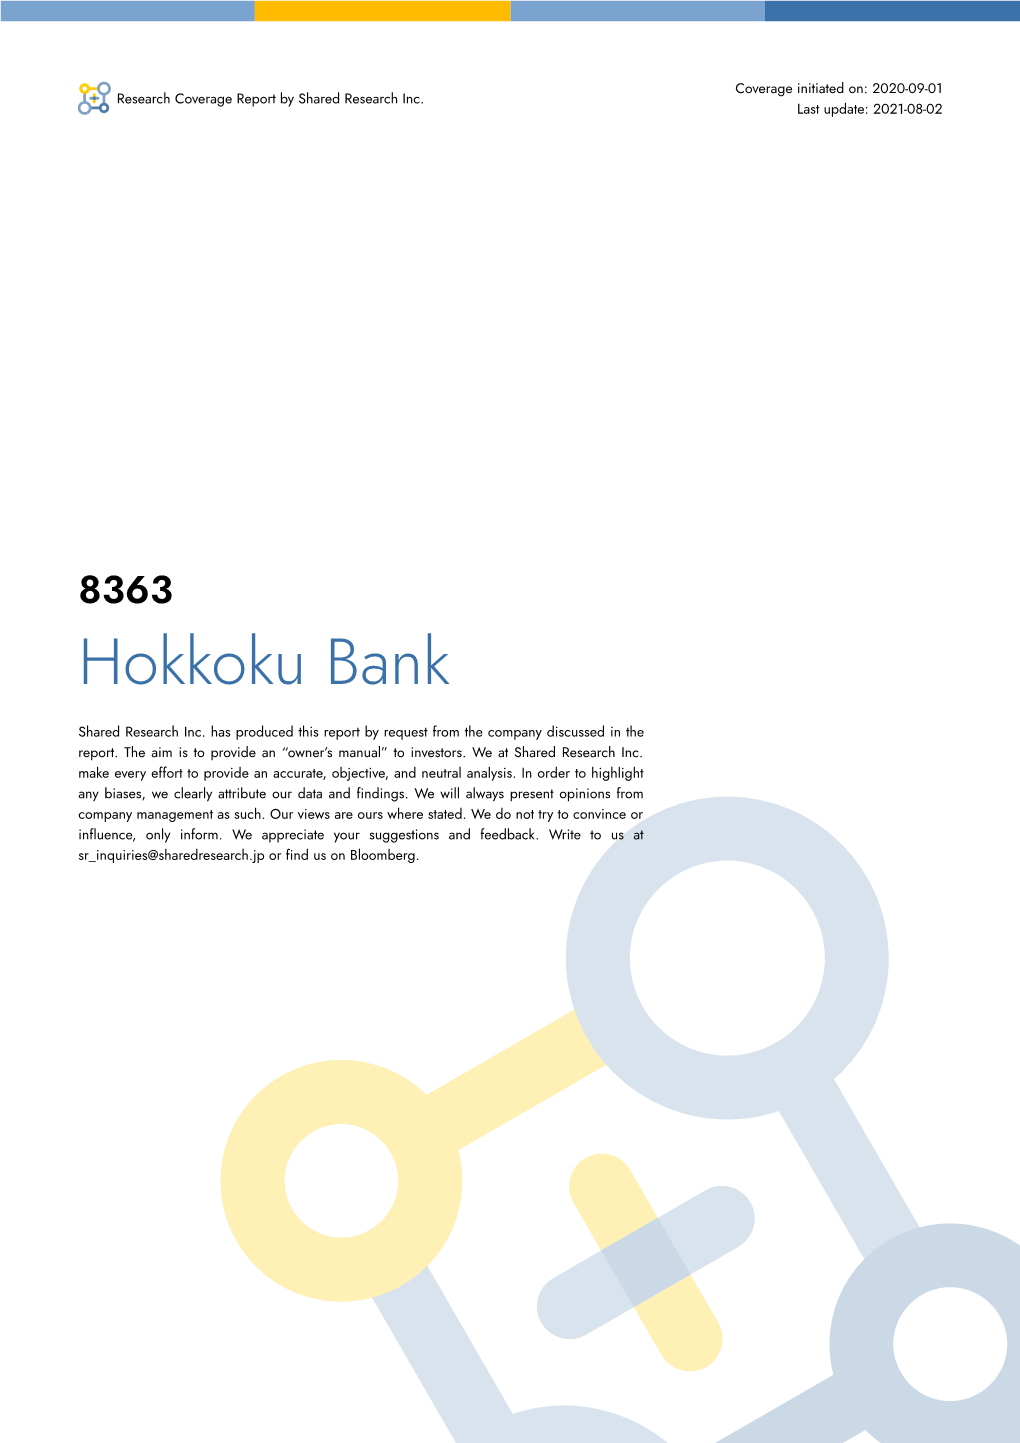 Hokkoku Bank